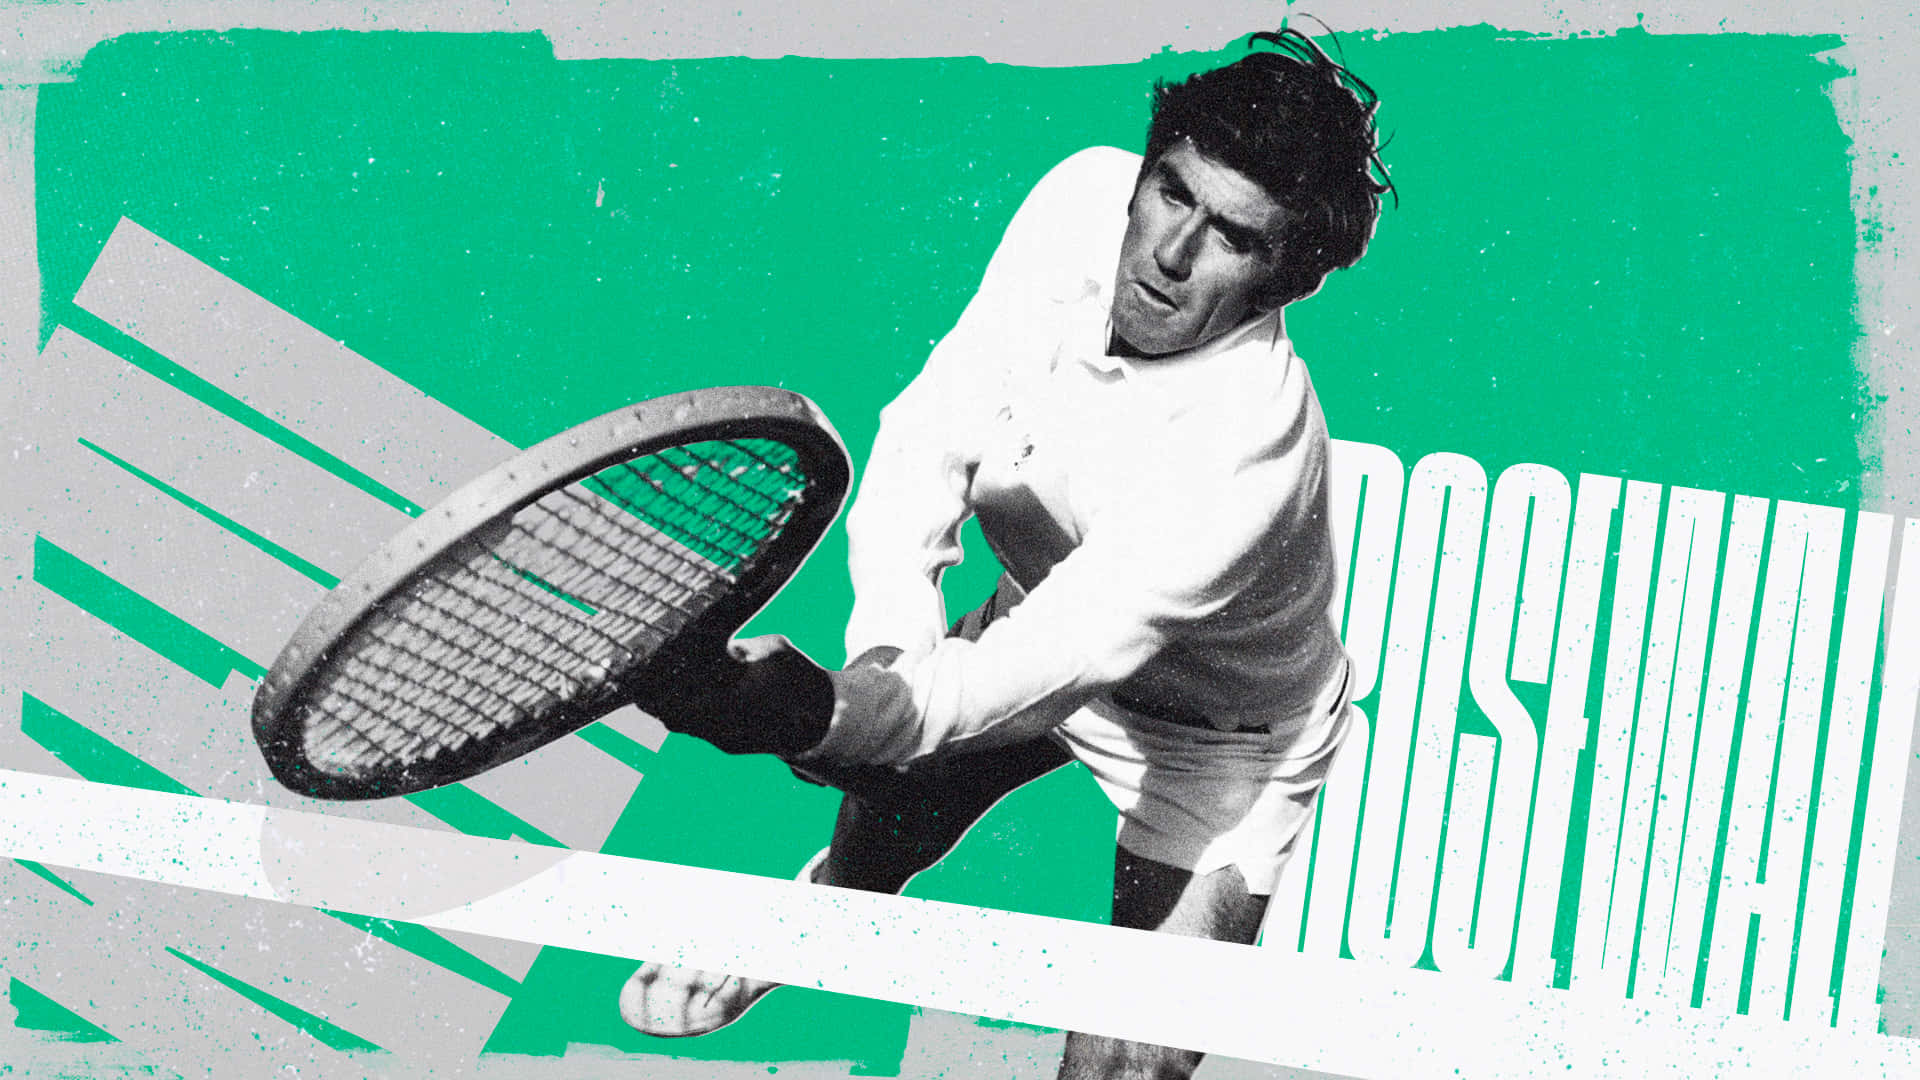 Ken Rosewall Tennis Player Digital Art Photography Edit Wallpaper